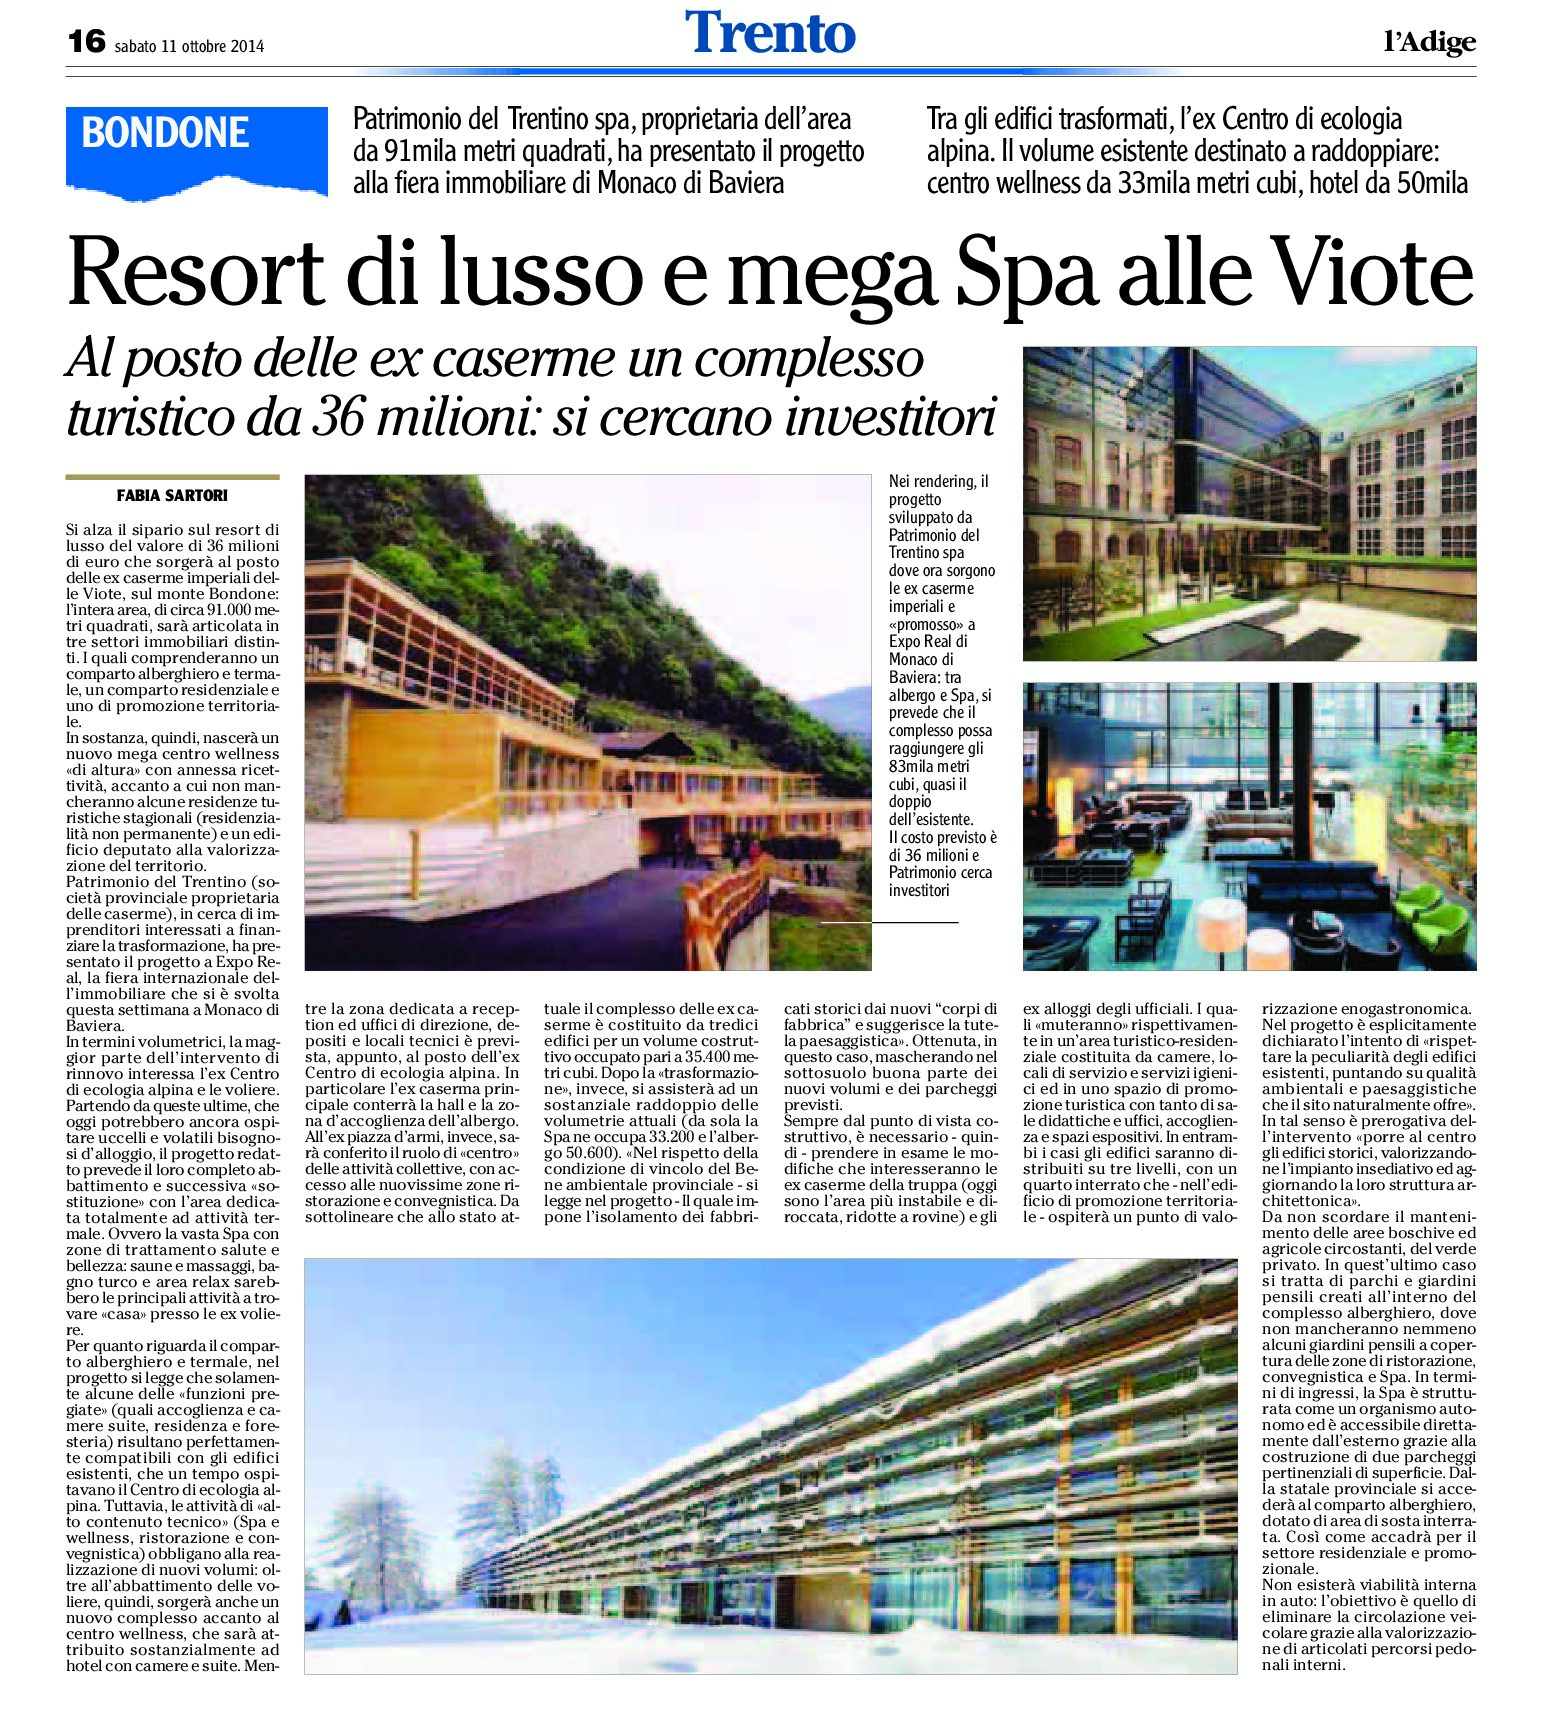 Trento, Bondone: Resort di lusso e mega Spa alle Viote